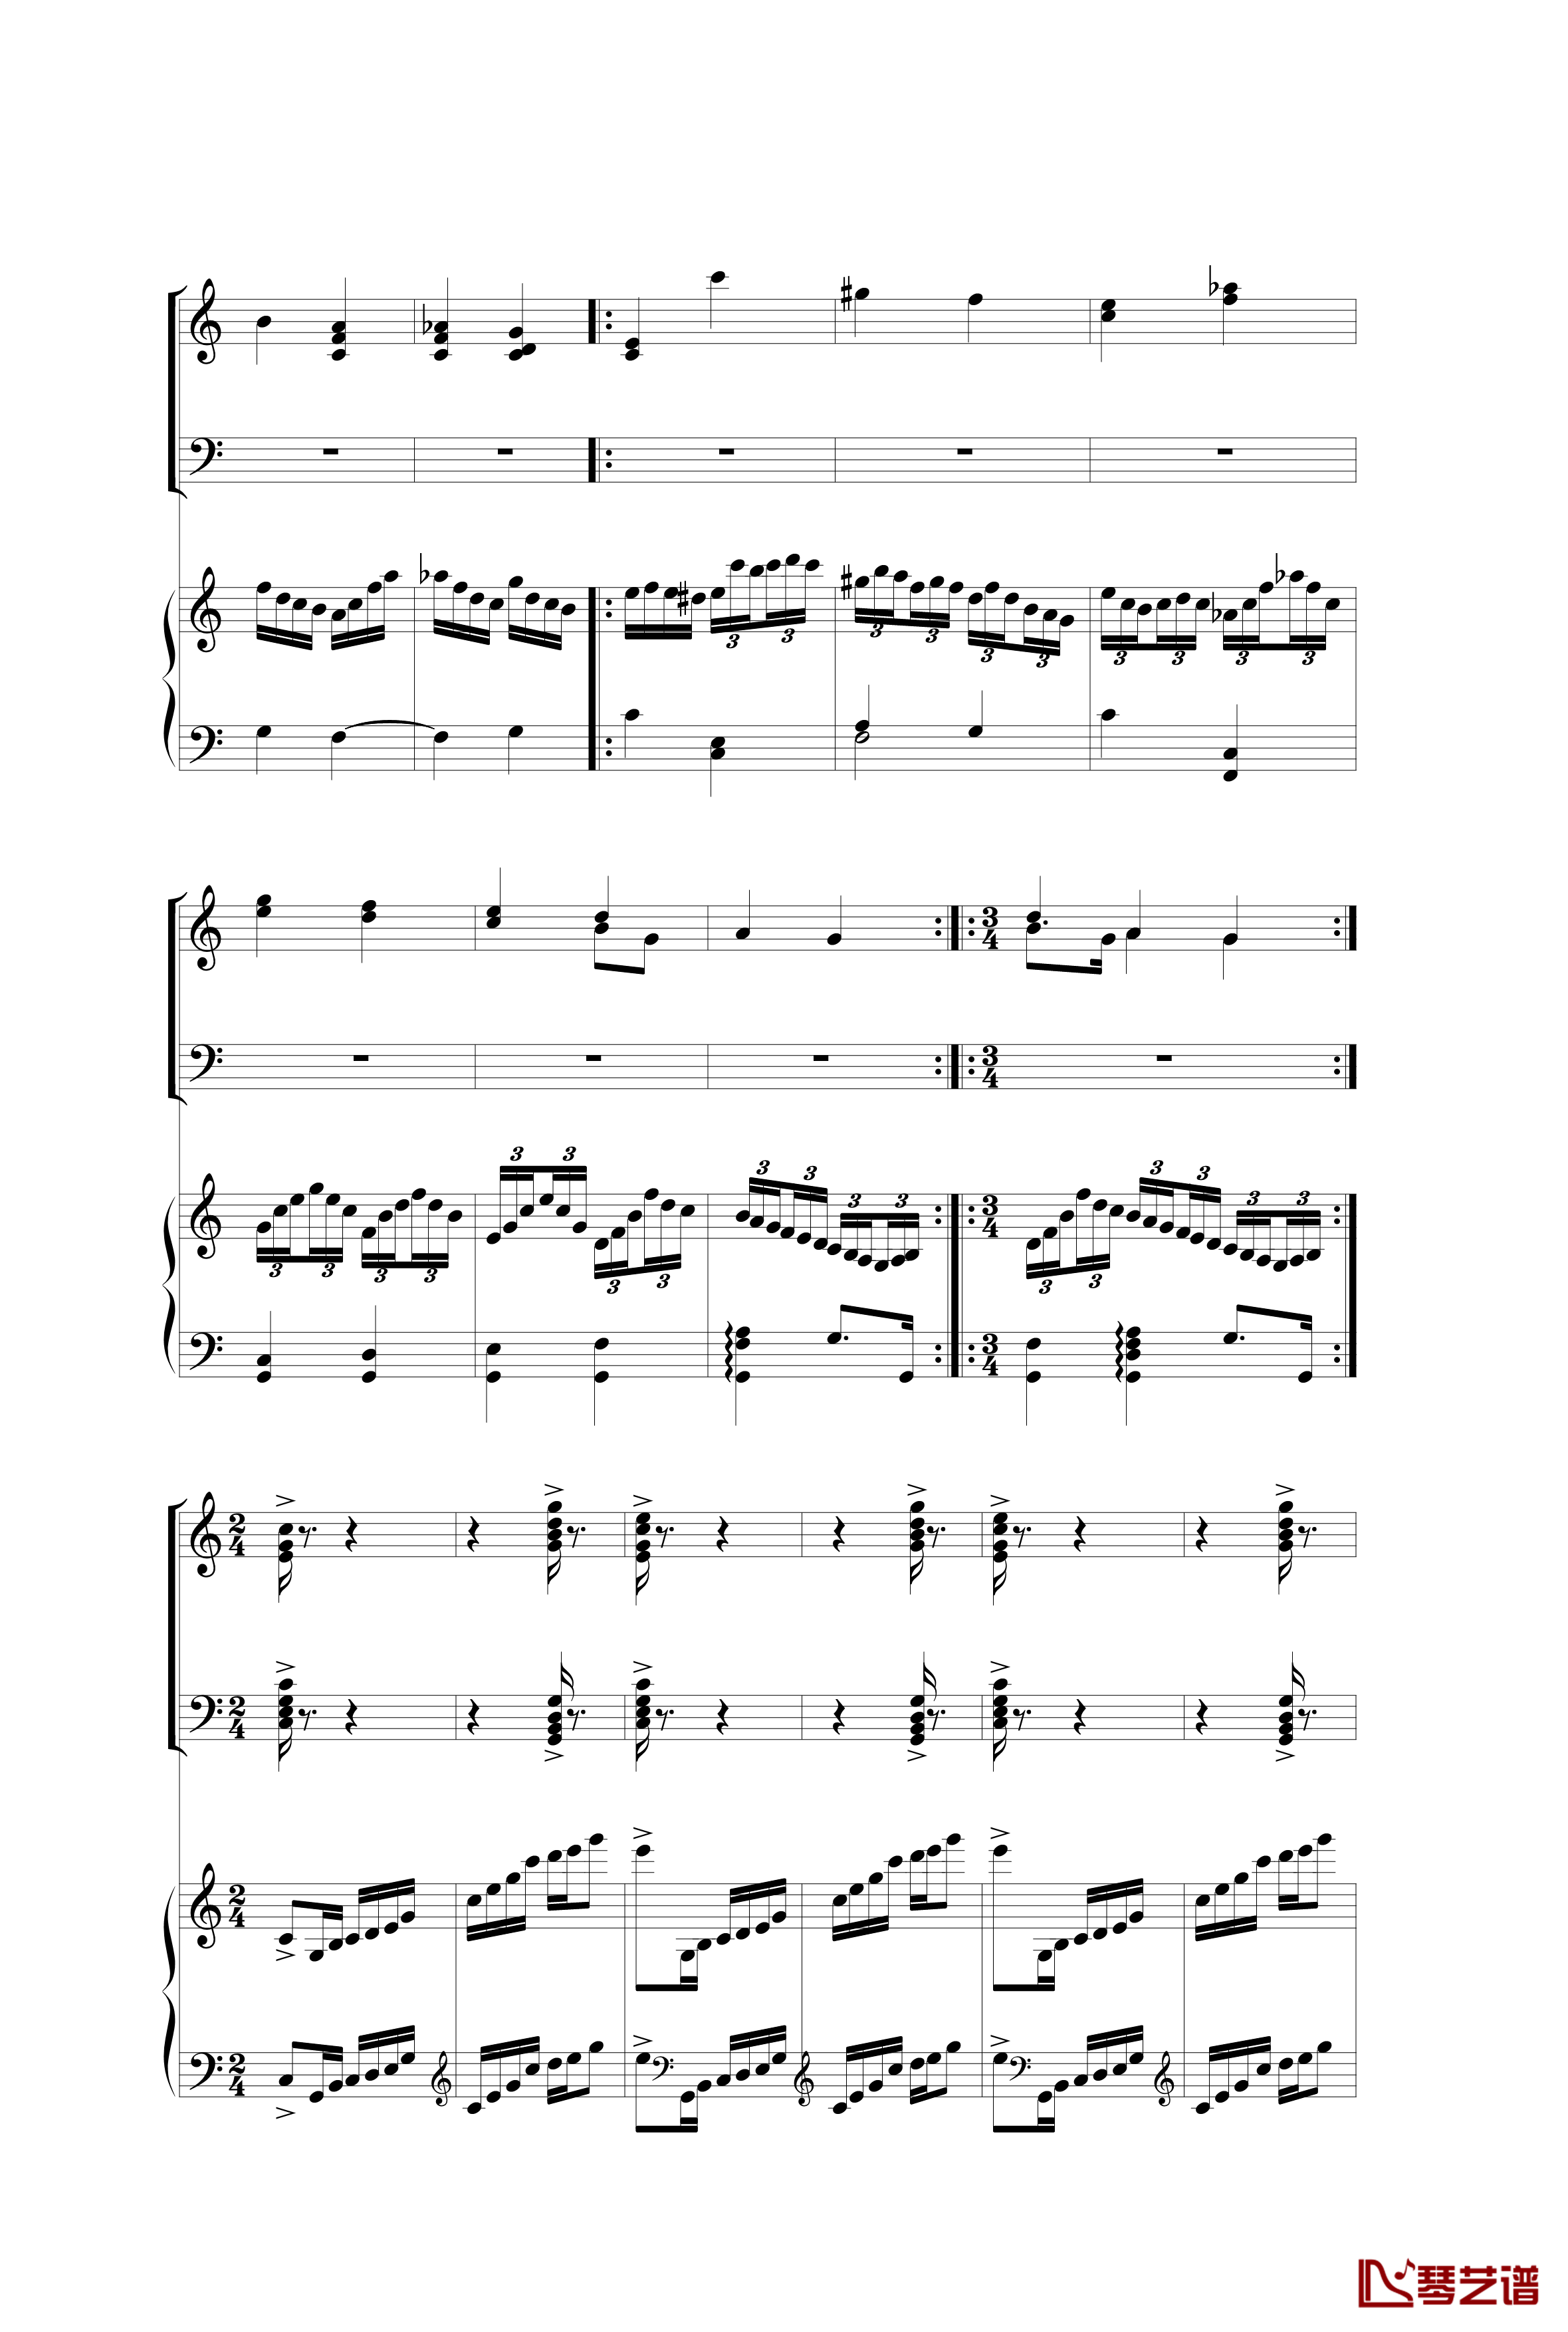 Piano Concerto I钢琴谱-3.mov-nzh193430